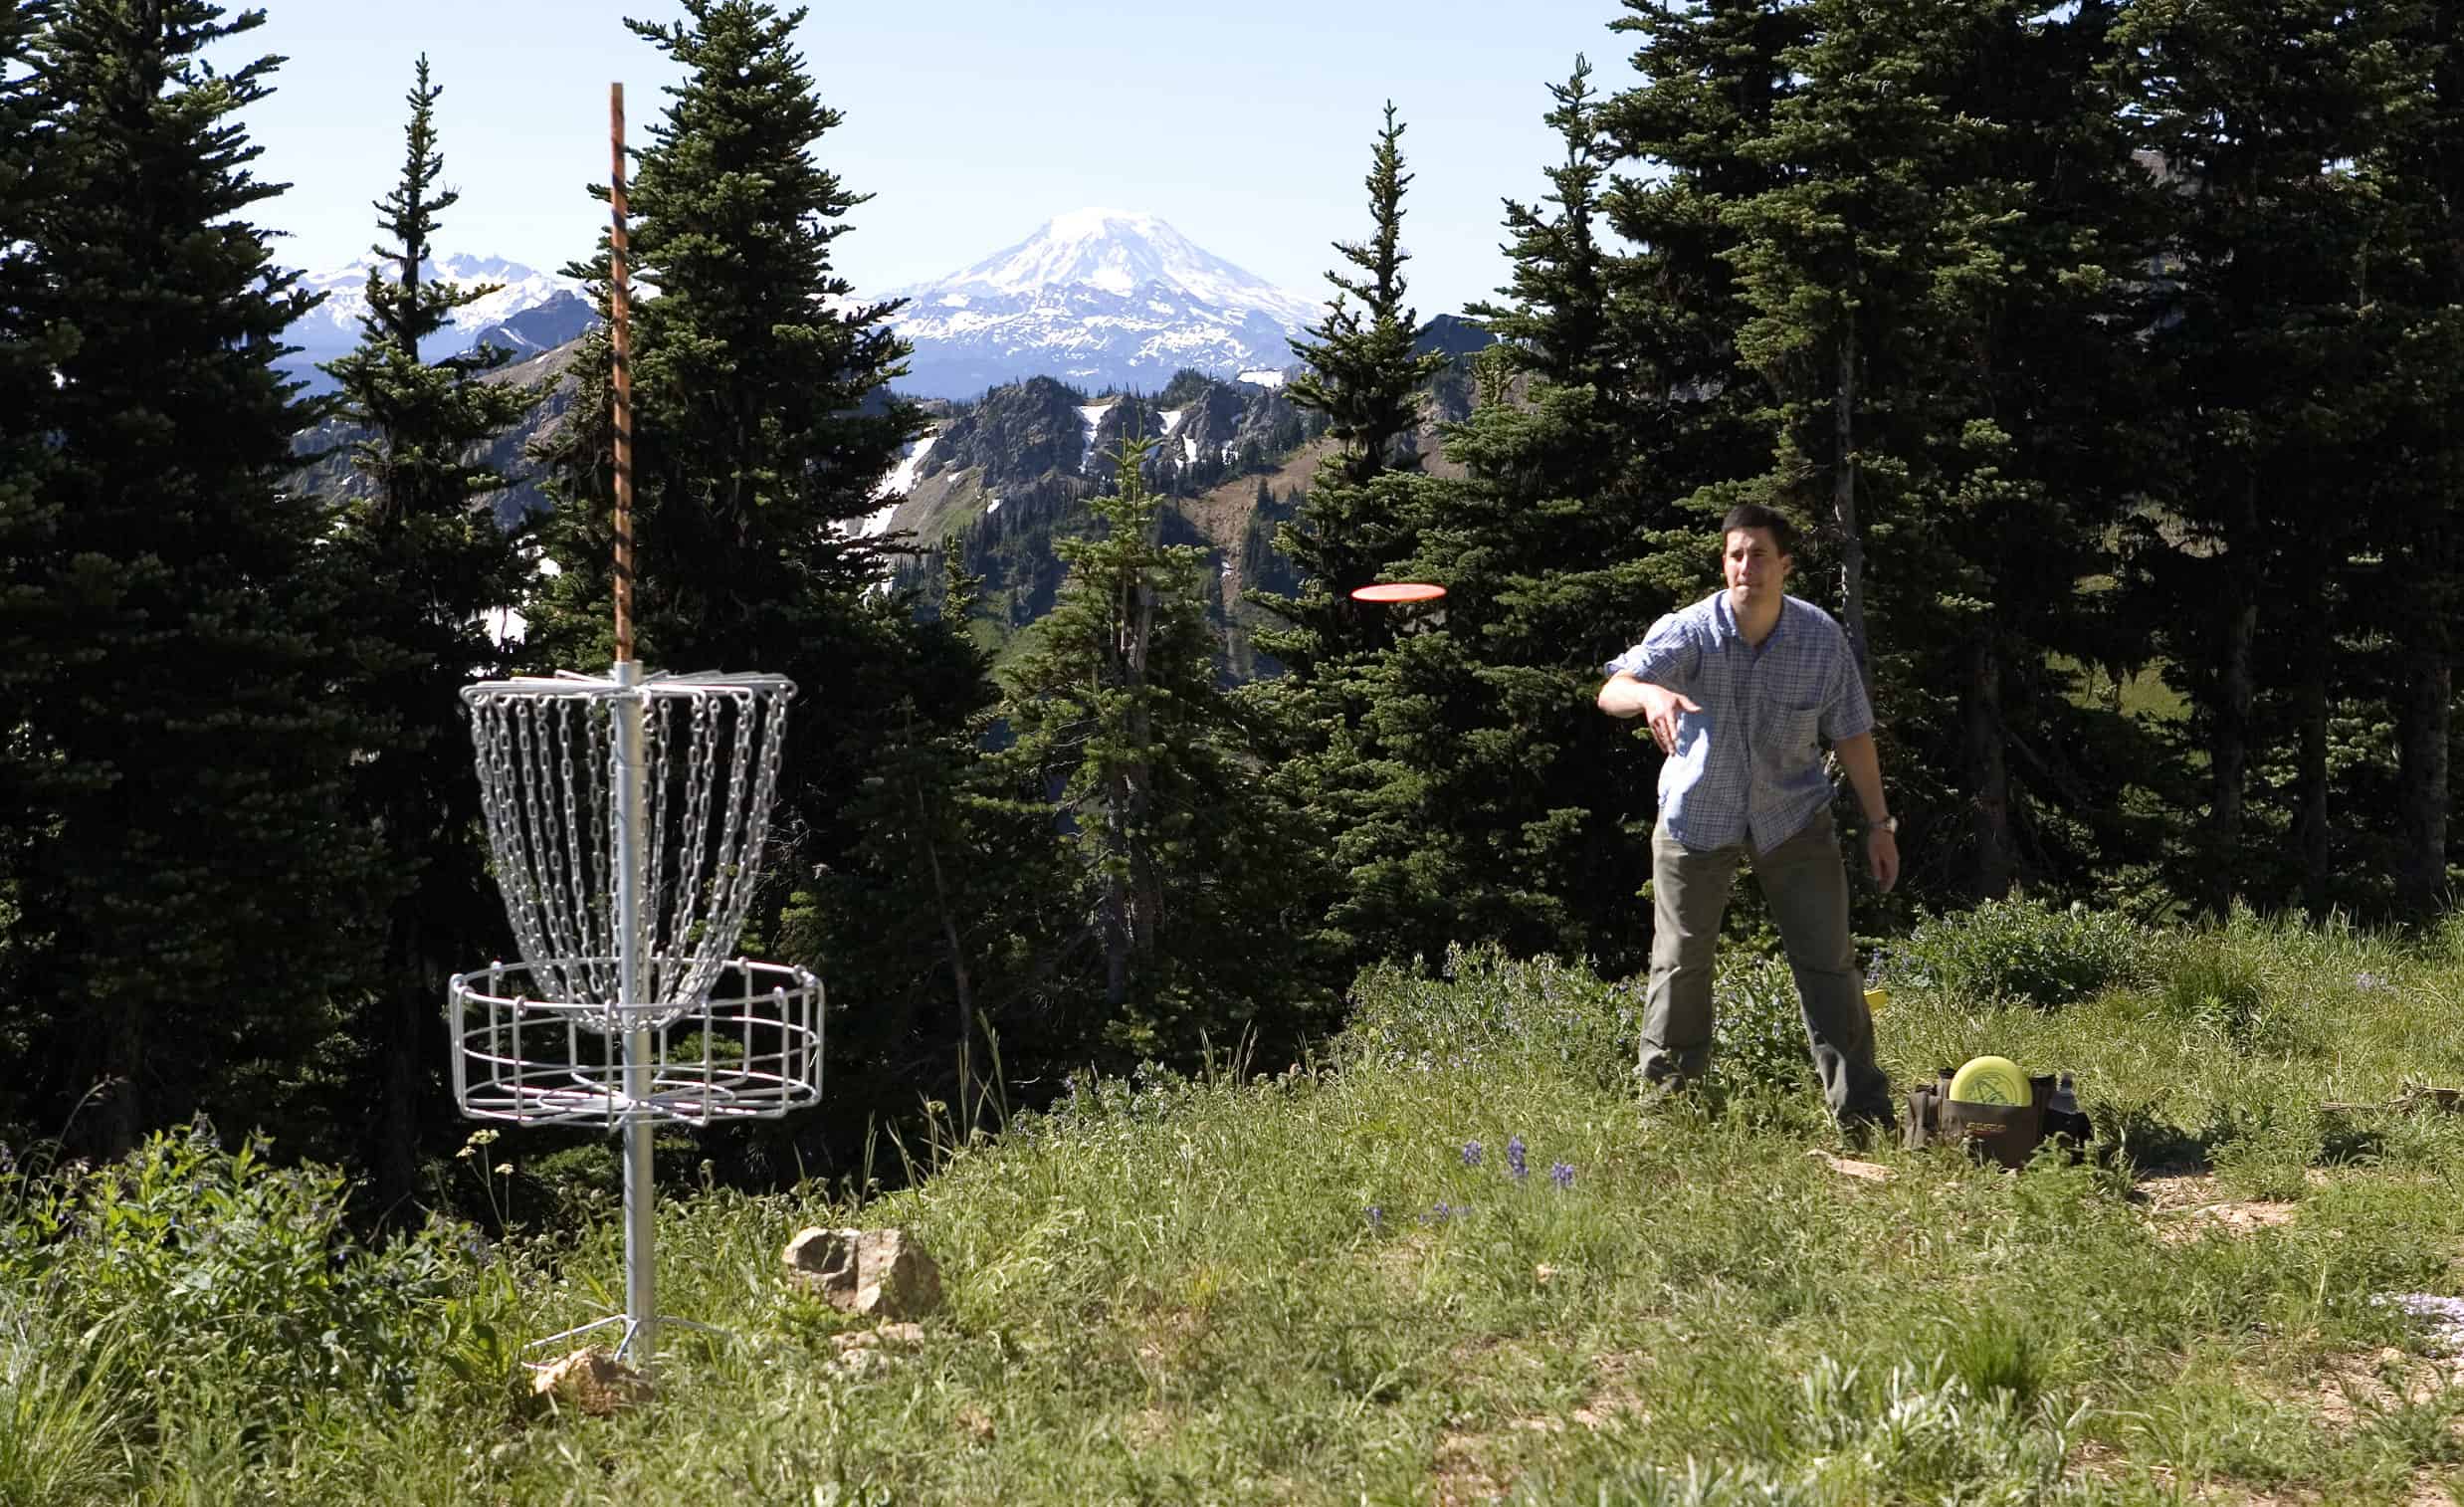 Crystal Mountain Disc Golf near Mount Rainier!